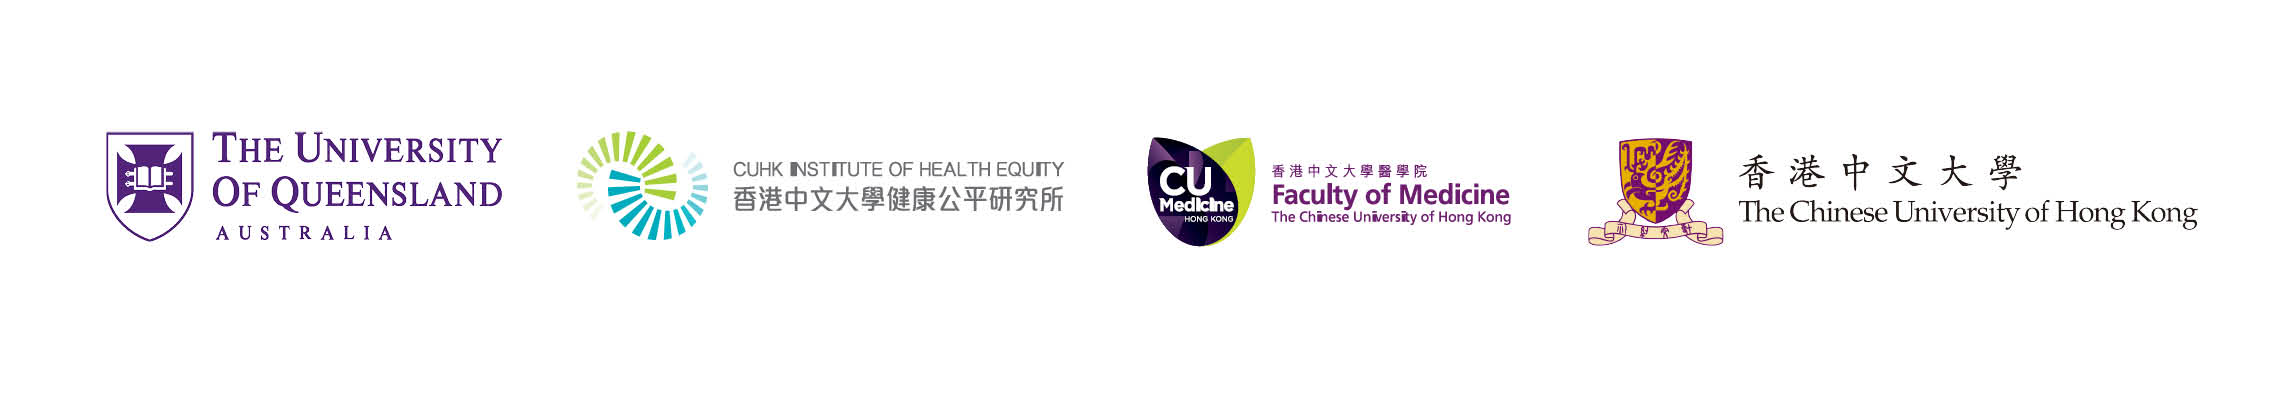 UQ-CUHK logos